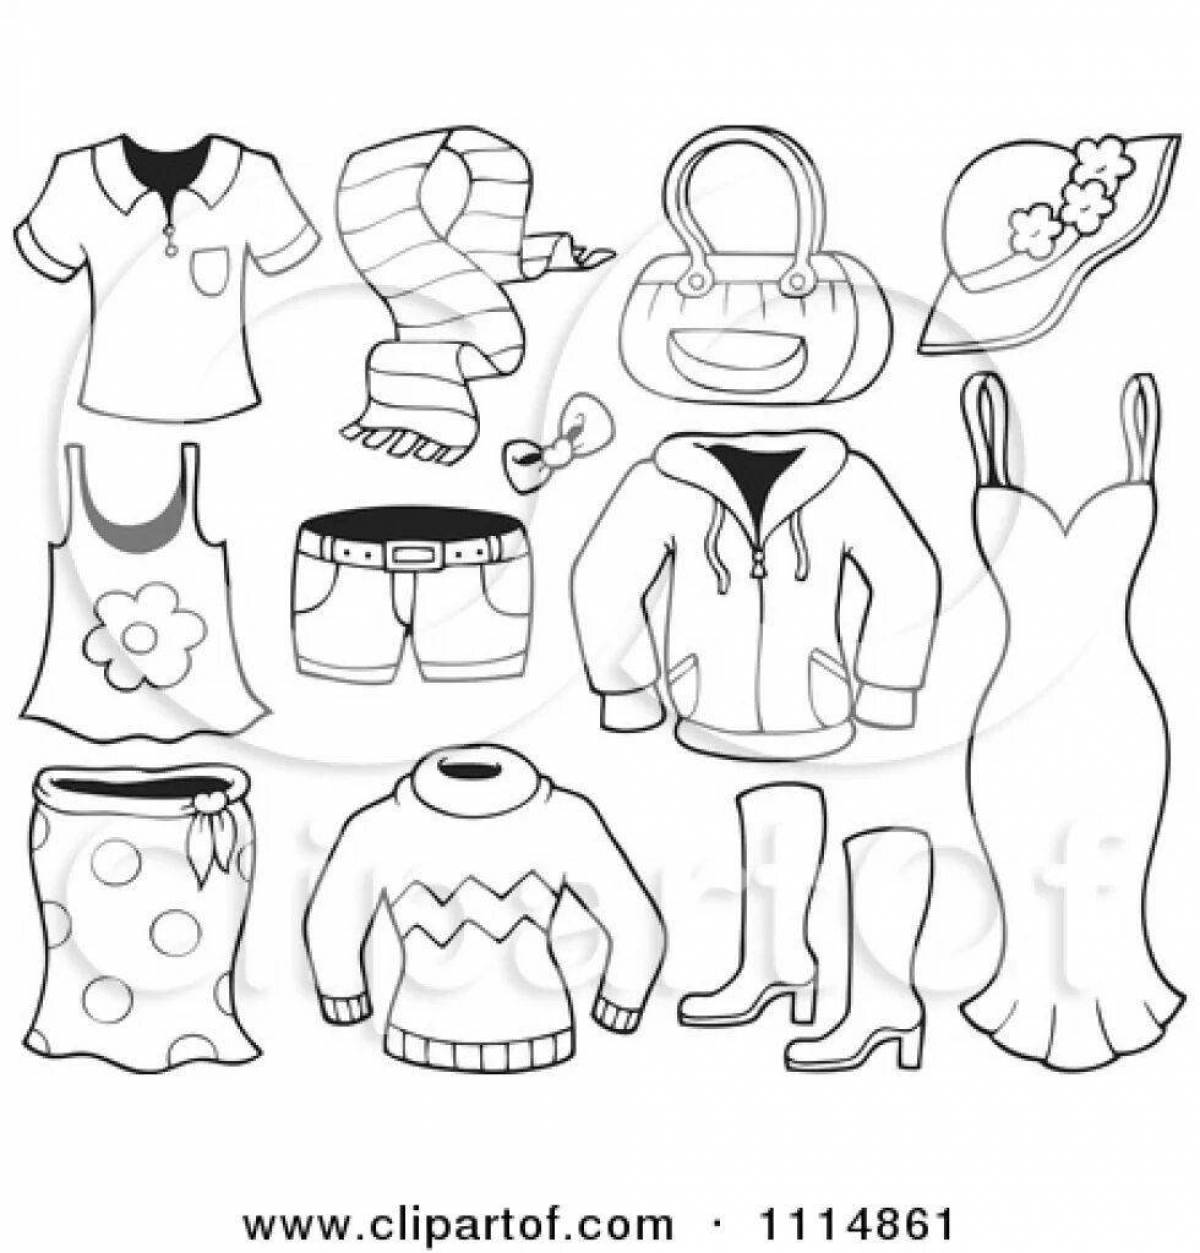 Креативная страница раскраски одежды для детей 6-7 лет